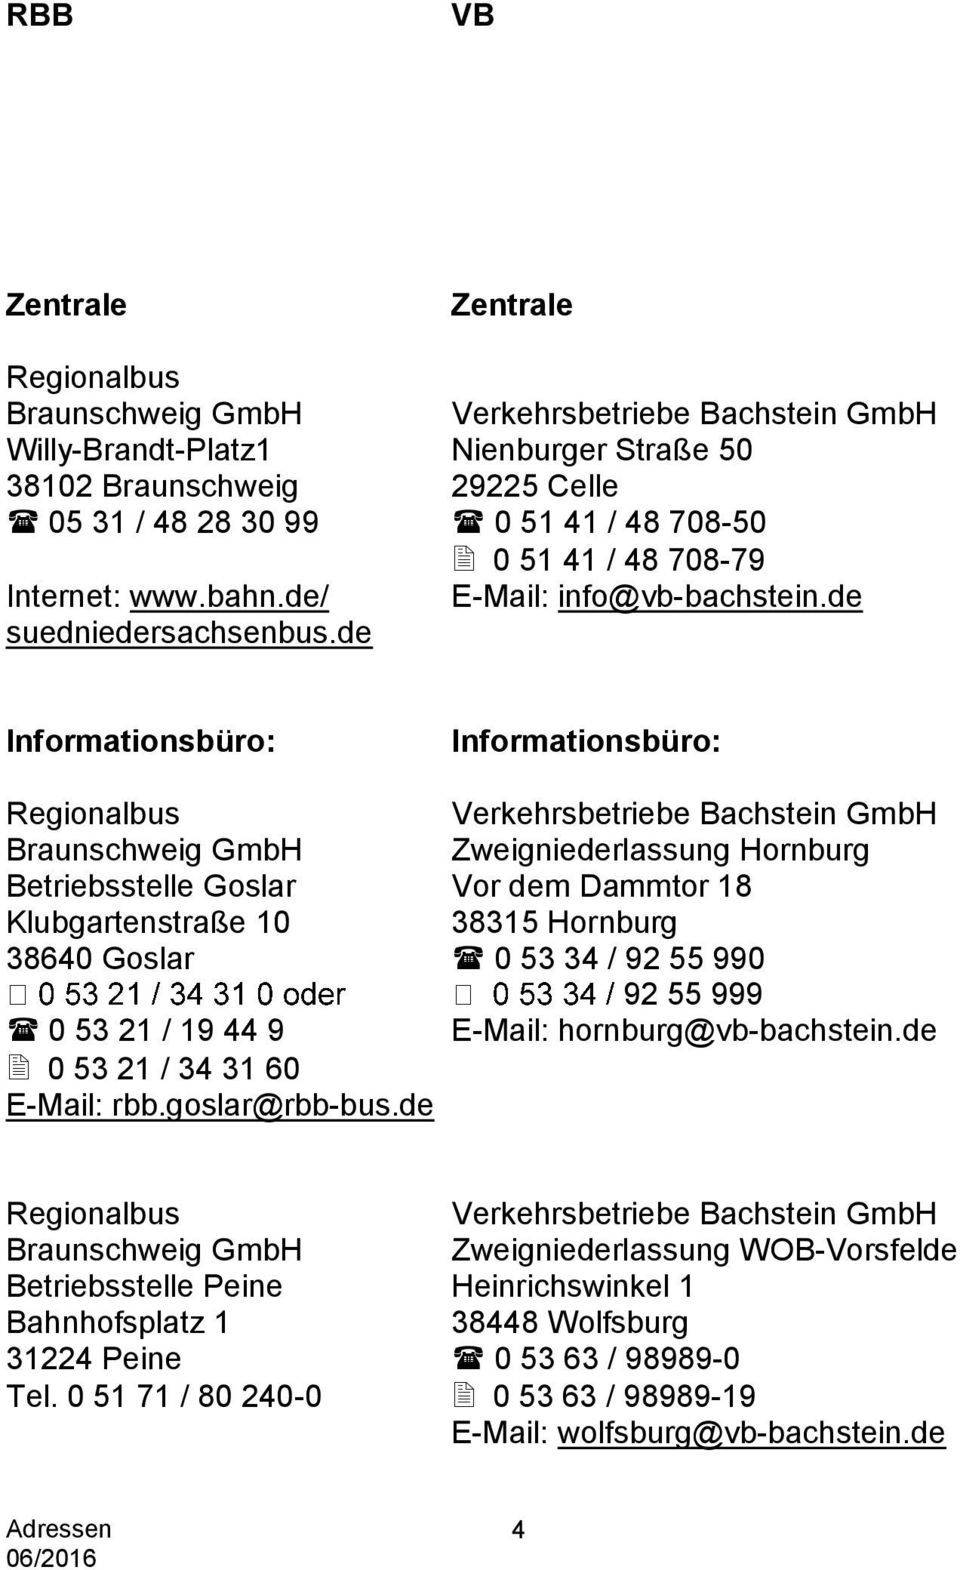 de Informationsbüro: Informationsbüro: Regionalbus Verkehrsbetriebe Bachstein GmbH GmbH Zweigniederlassung Hornburg Betriebsstelle Goslar Vor dem Dammtor 18 Klubgartenstraße 10 38315 Hornburg 38640